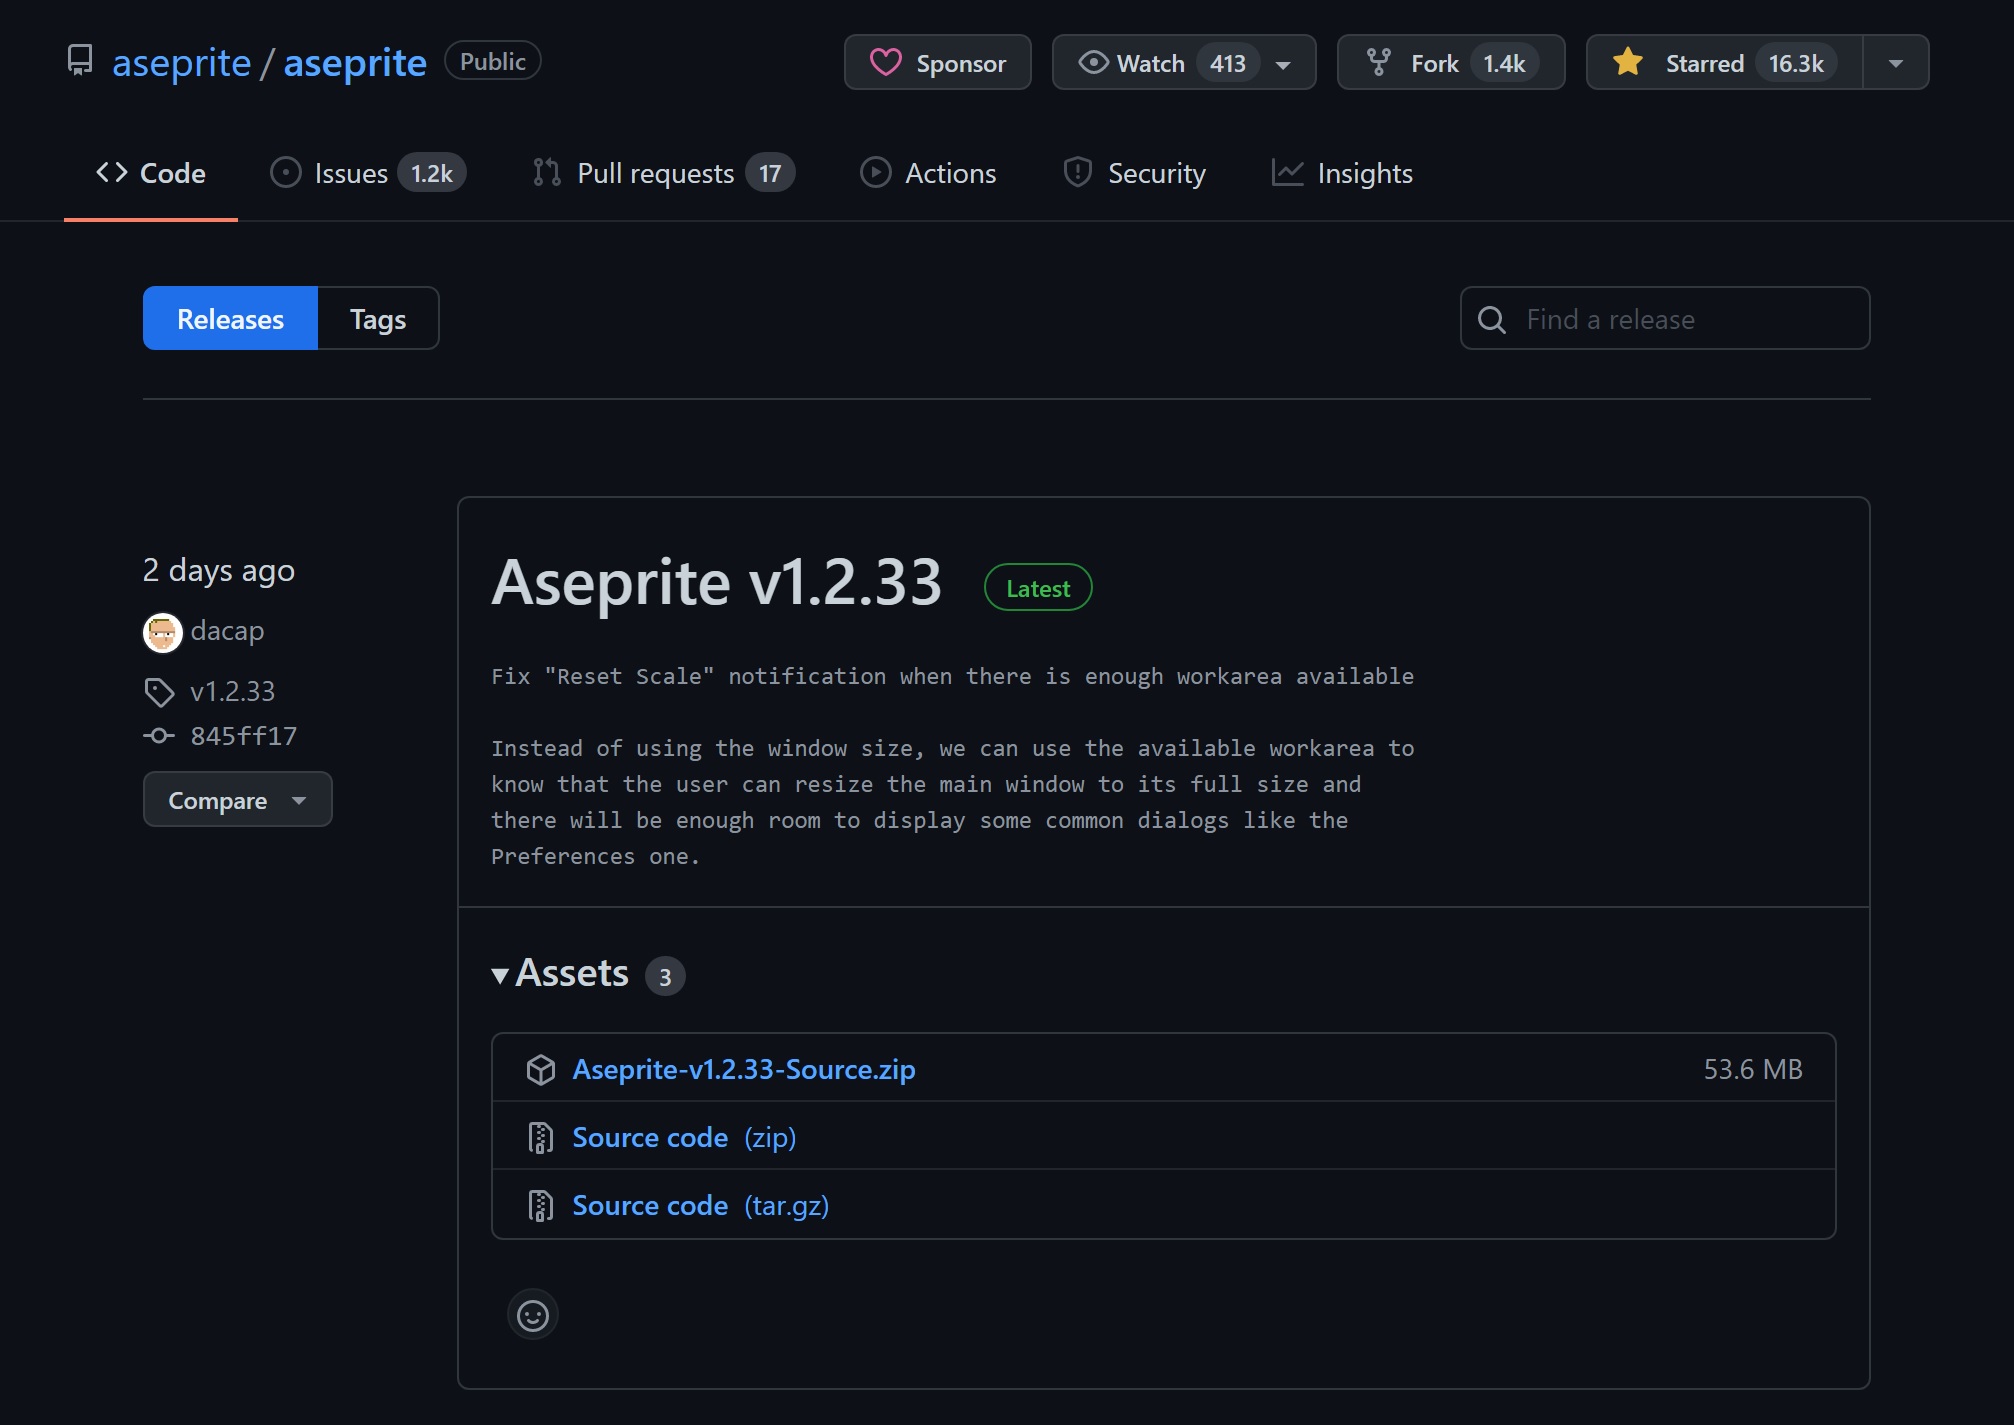 下载 Aseprite-<version>-Source.zip